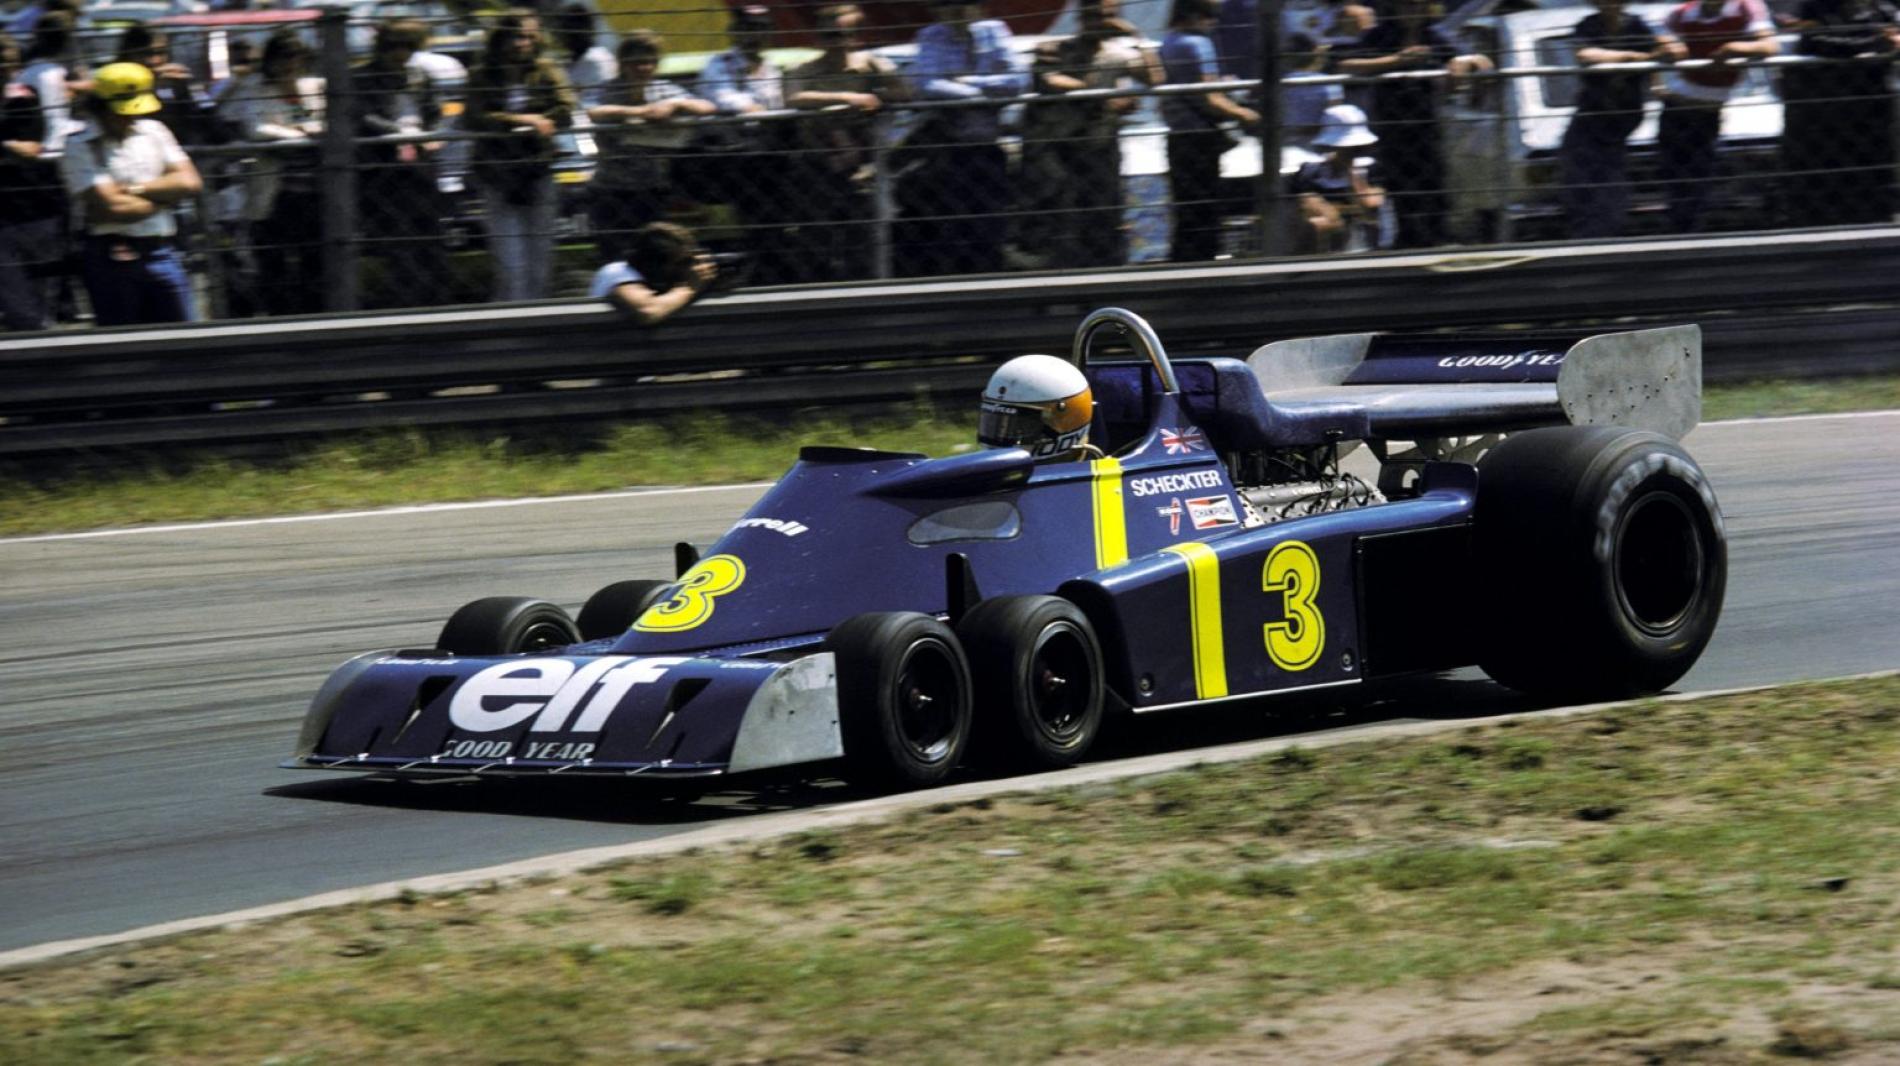 La F1 in città, Patrese e Martini per la Tyrrell